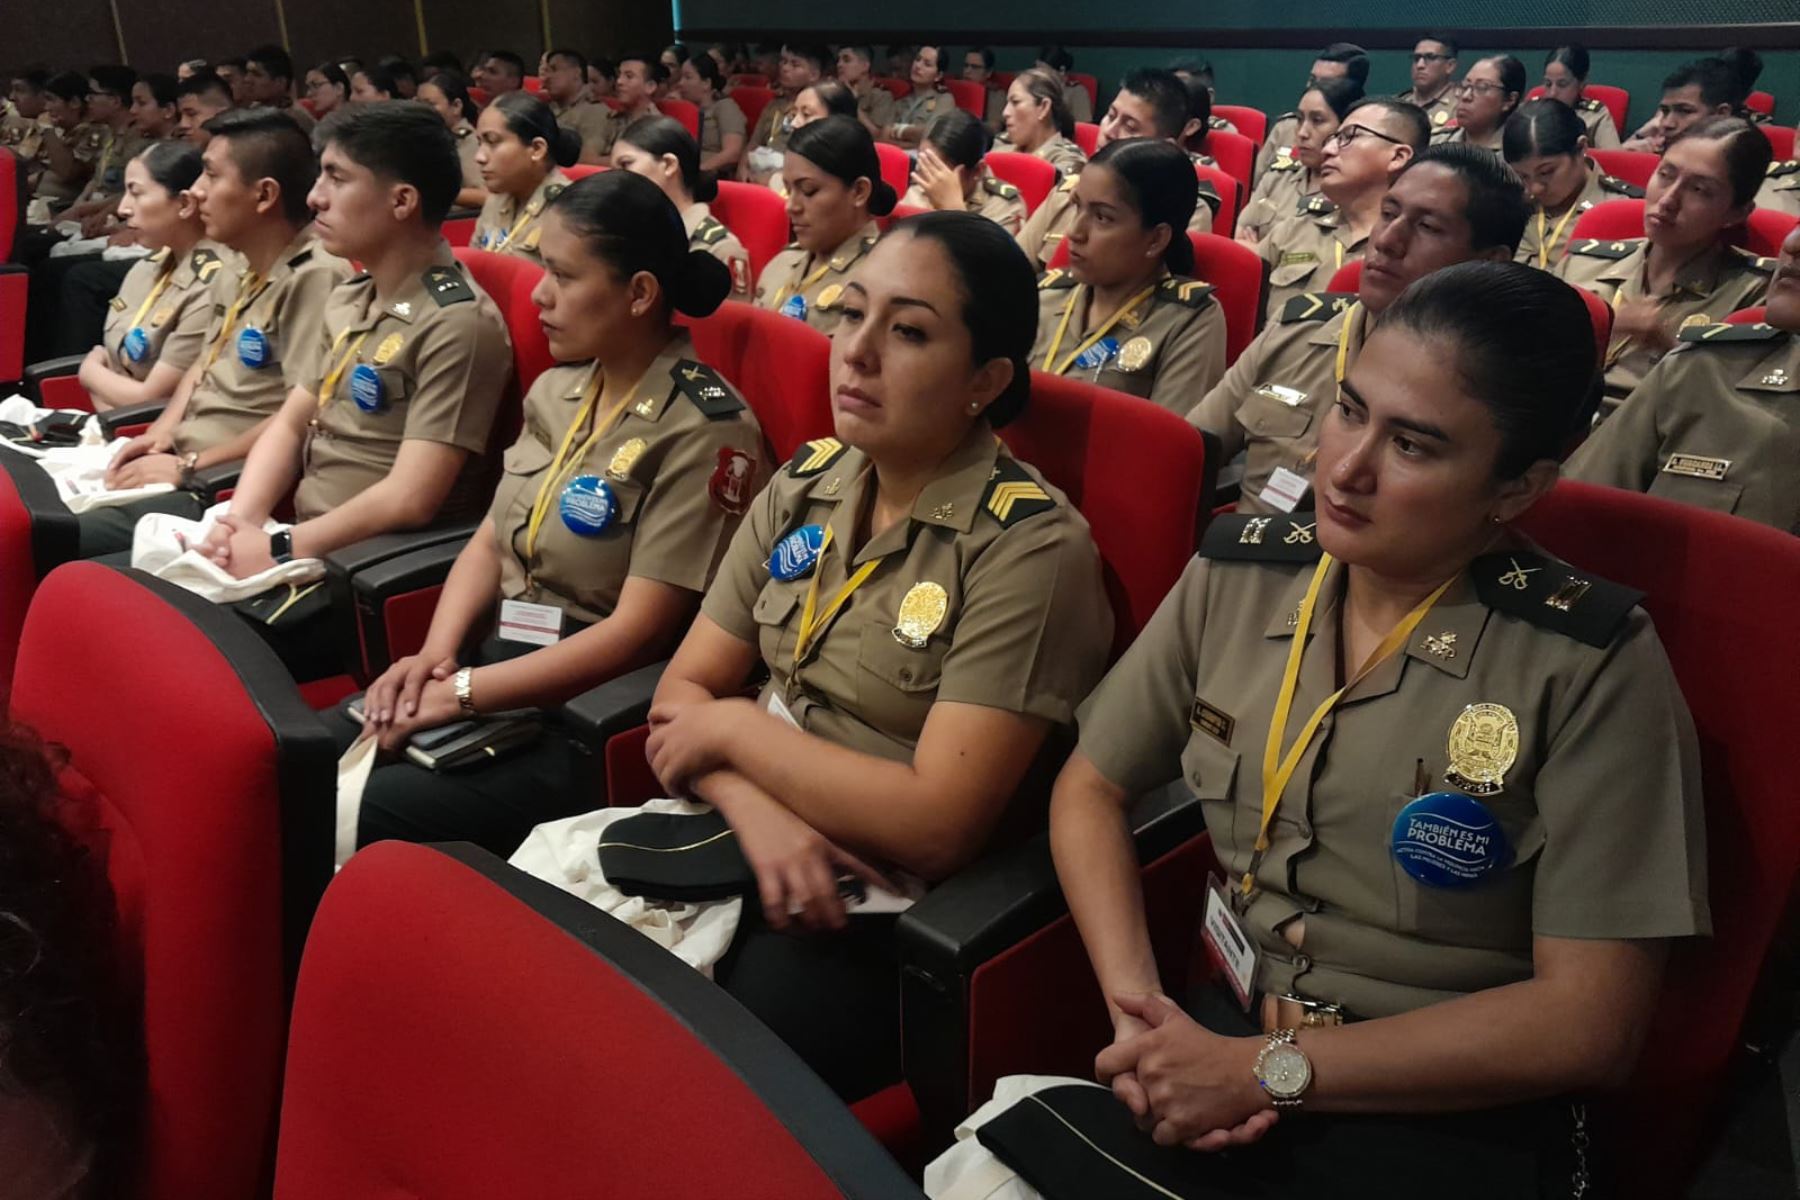 La capacitación se desarrolló en el auditorio Mariano Santos y los efectivos policiales recibieron formación sobre la Ley N°30364 sobre violencia contra la mujer. ANDINA/ Mininter.